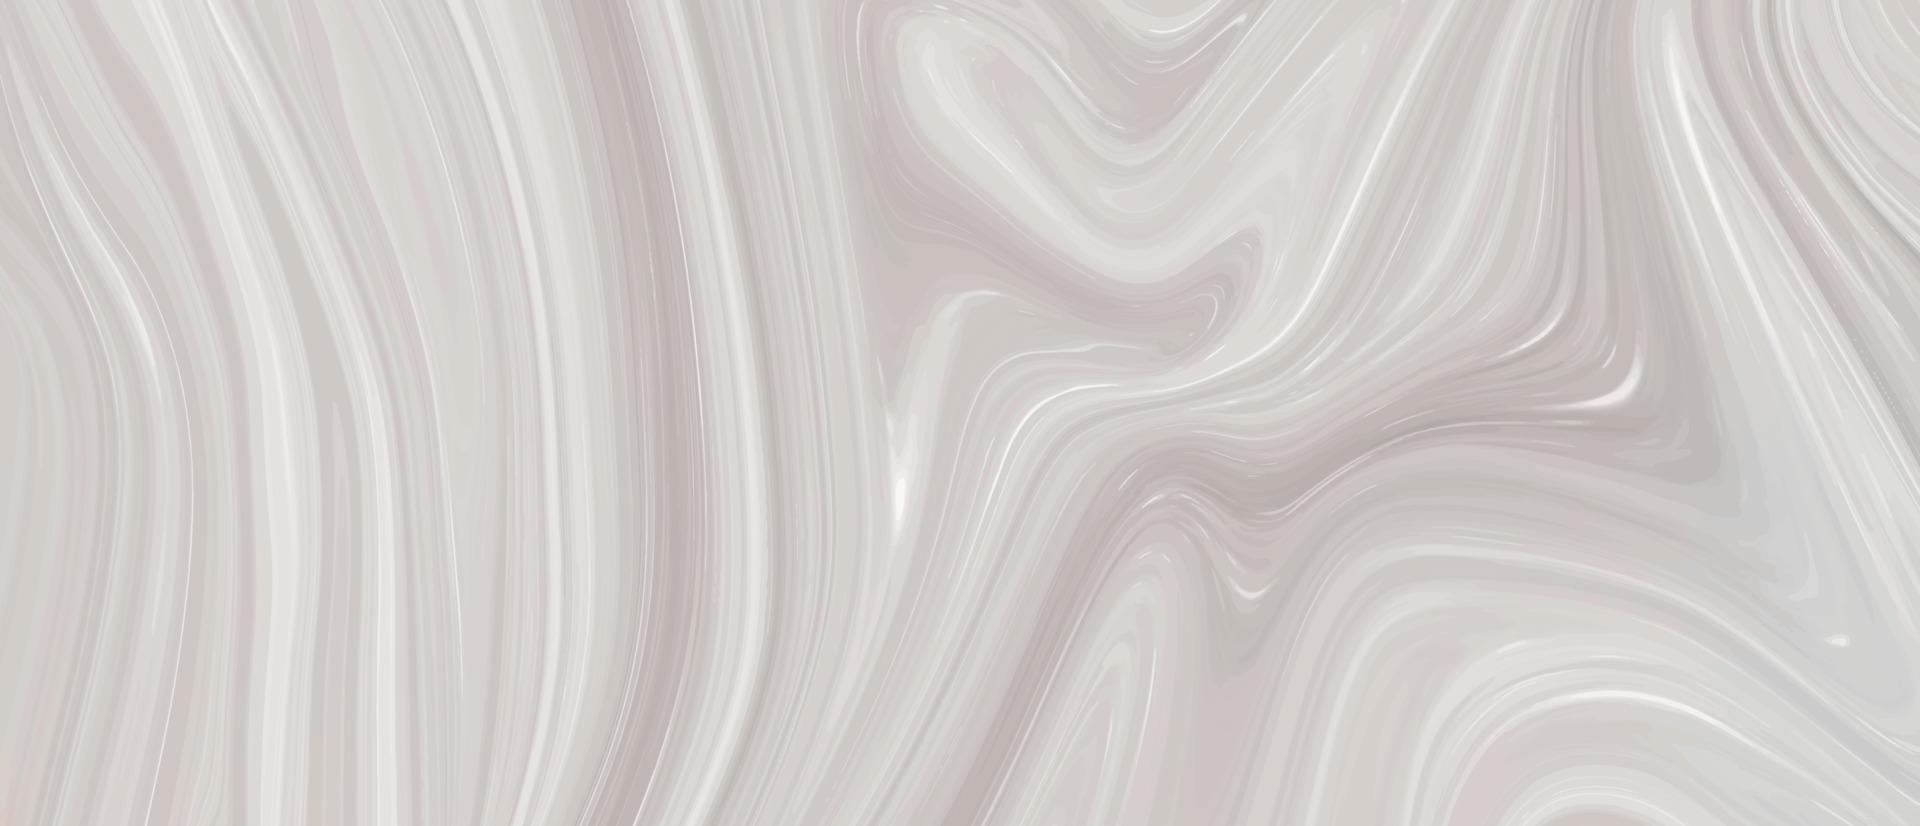 abstrakt vätska linje bakgrund illustration. marmor textur. måla stänk. färgrik och fint färgad vätska bakgrund. glansig flytande akryl måla textur. abstrakt svart, vit marmor textur. vektor